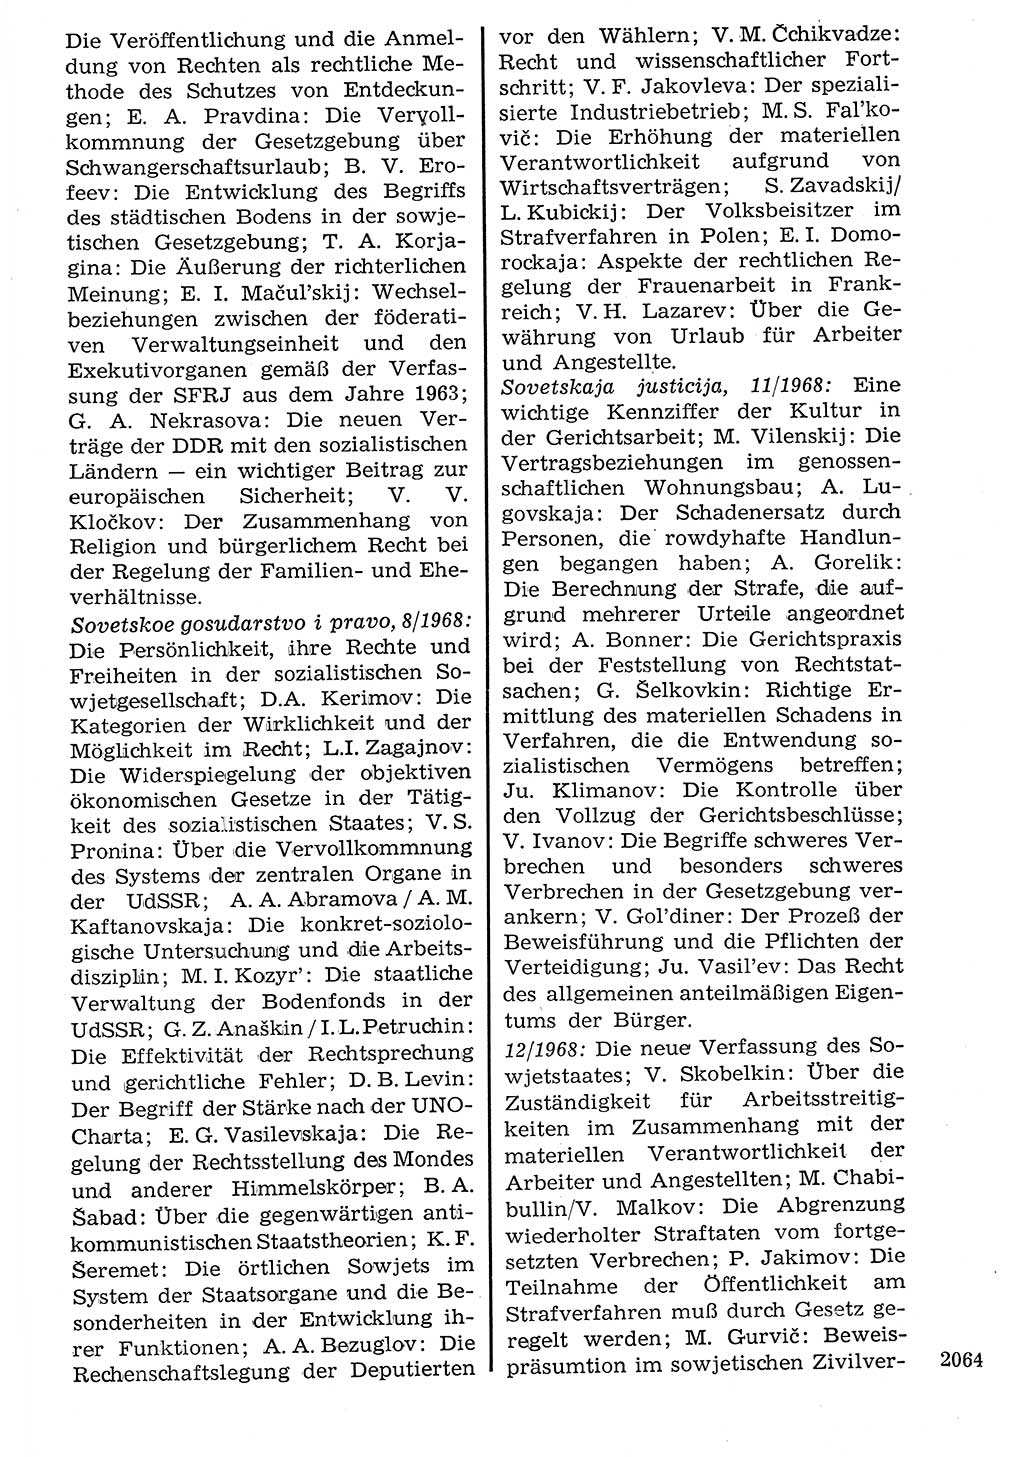 Staat und Recht (StuR), 17. Jahrgang [Deutsche Demokratische Republik (DDR)] 1968, Seite 2064 (StuR DDR 1968, S. 2064)